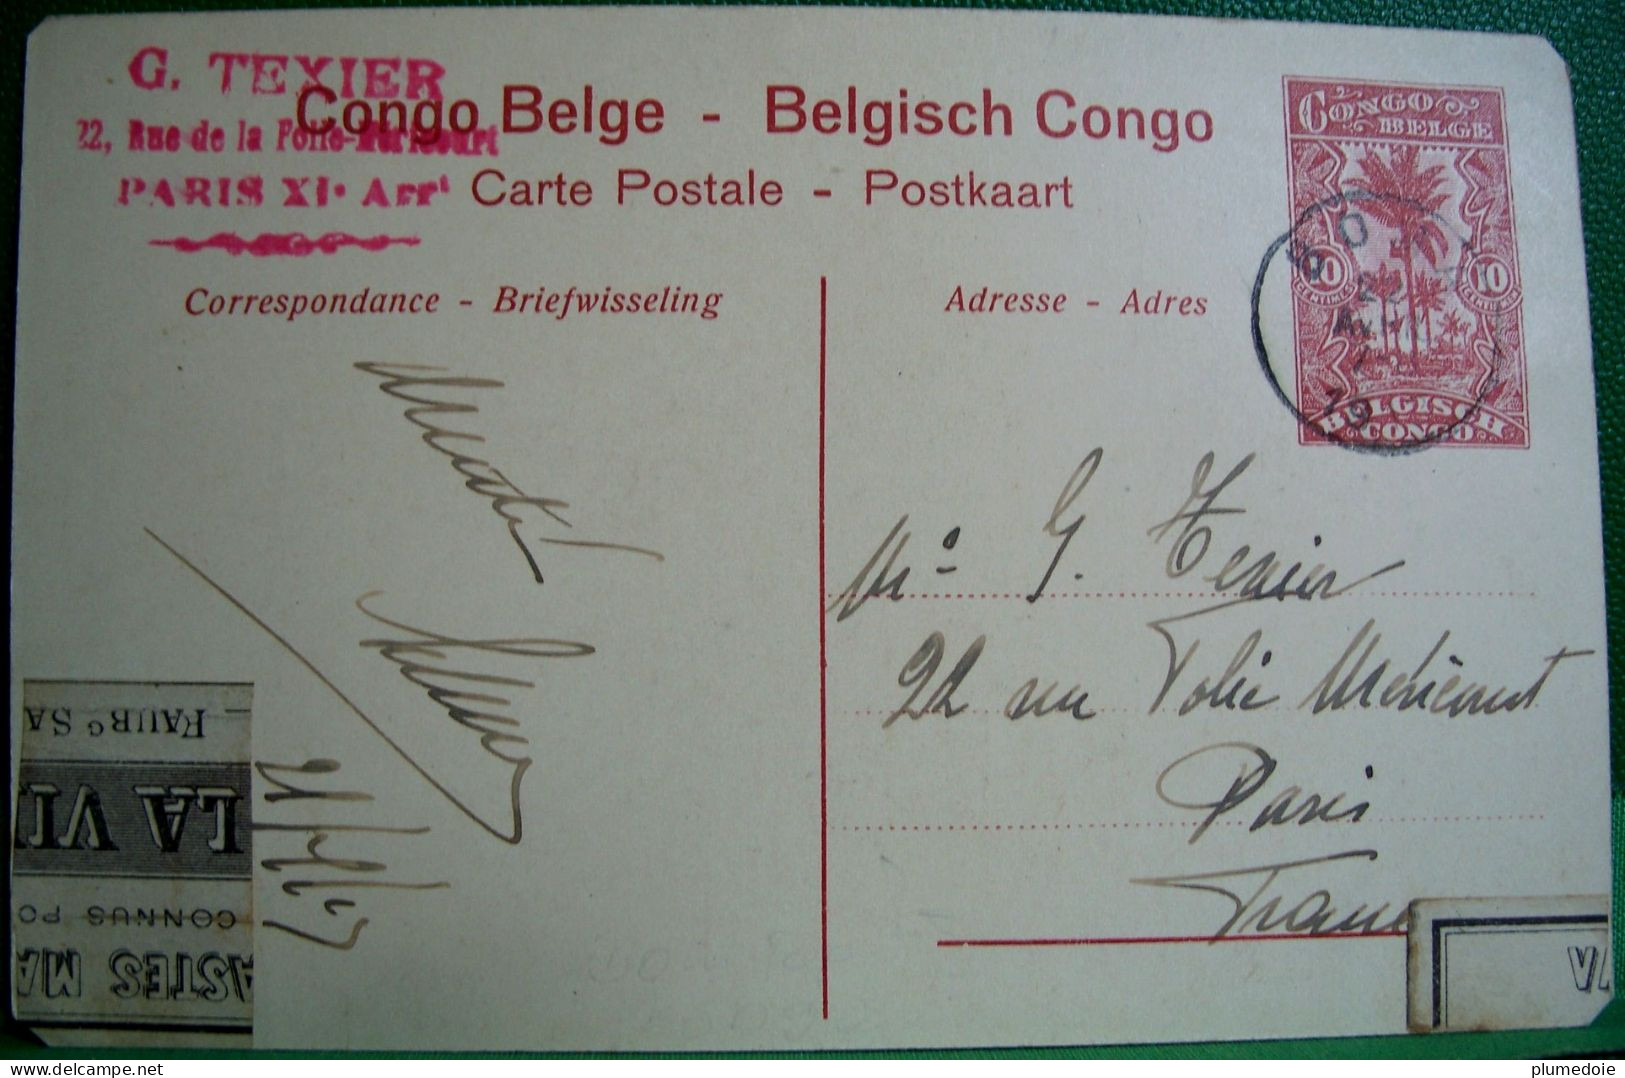 Cpa CONGO BELGE KITOBOLA Animée FAUCHEUSE MECANIQUE 1913  Attelage Boeufs ,ENTIER POSTAL 10 C , PAYSANS - Equipos